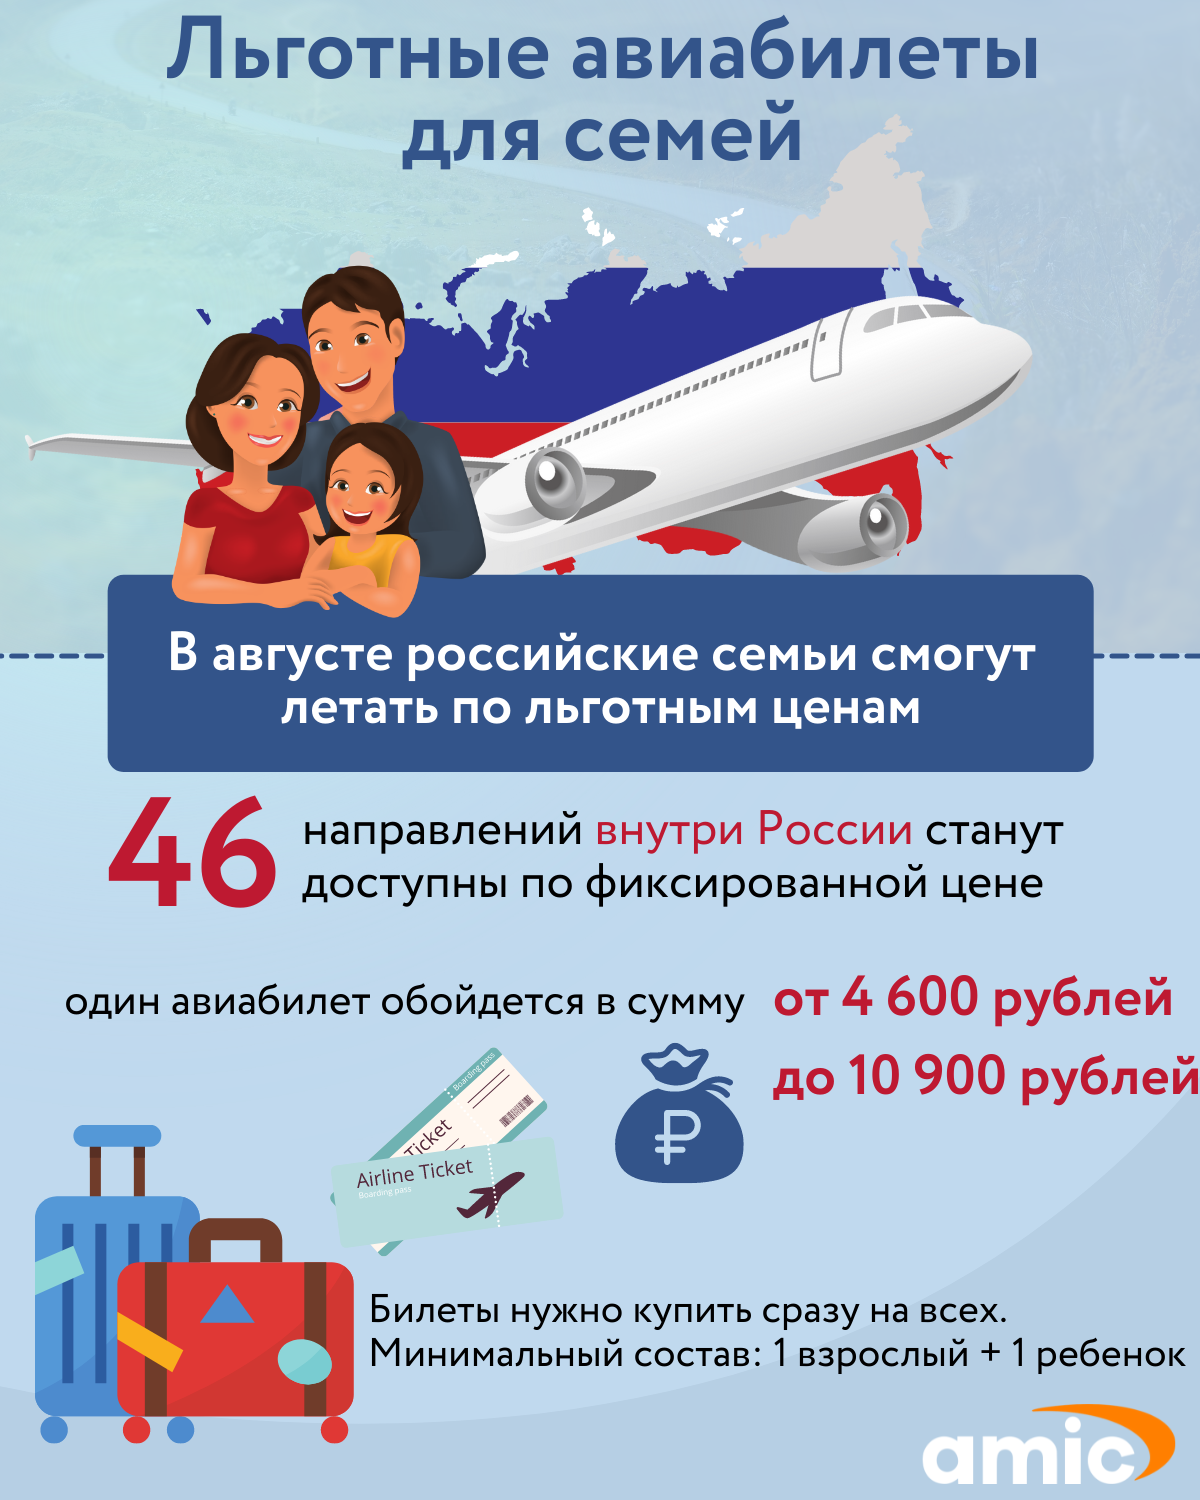 Льготный билет. Льготный перелет для семей с детьми. Самолет и билет на самолёт. Изменения в августе 2017